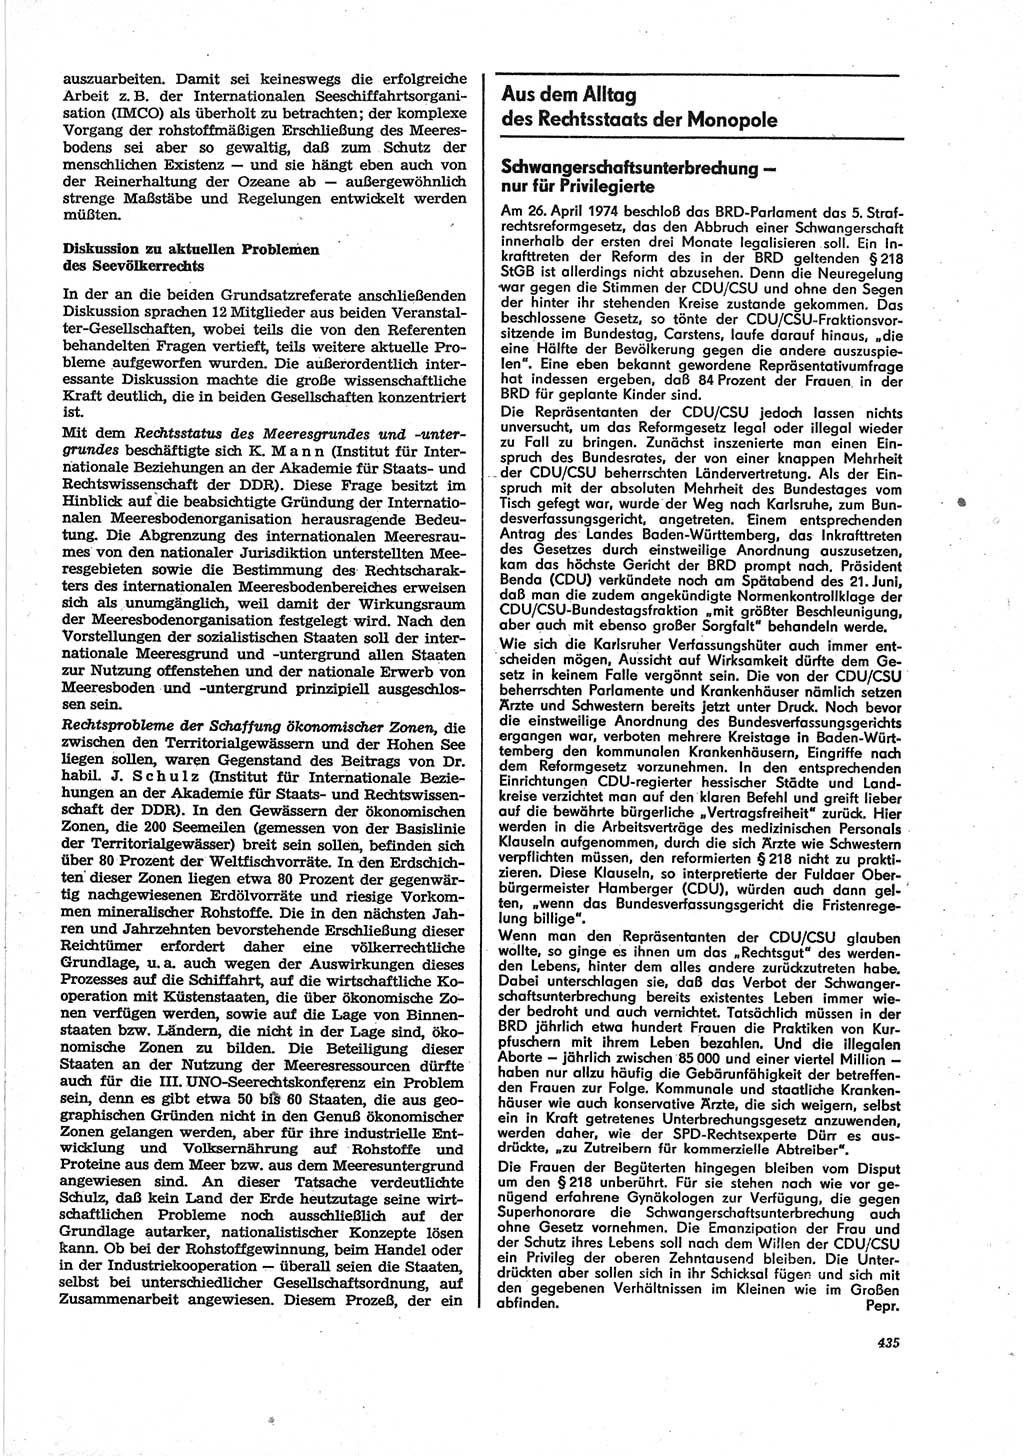 Neue Justiz (NJ), Zeitschrift für Recht und Rechtswissenschaft [Deutsche Demokratische Republik (DDR)], 28. Jahrgang 1974, Seite 435 (NJ DDR 1974, S. 435)